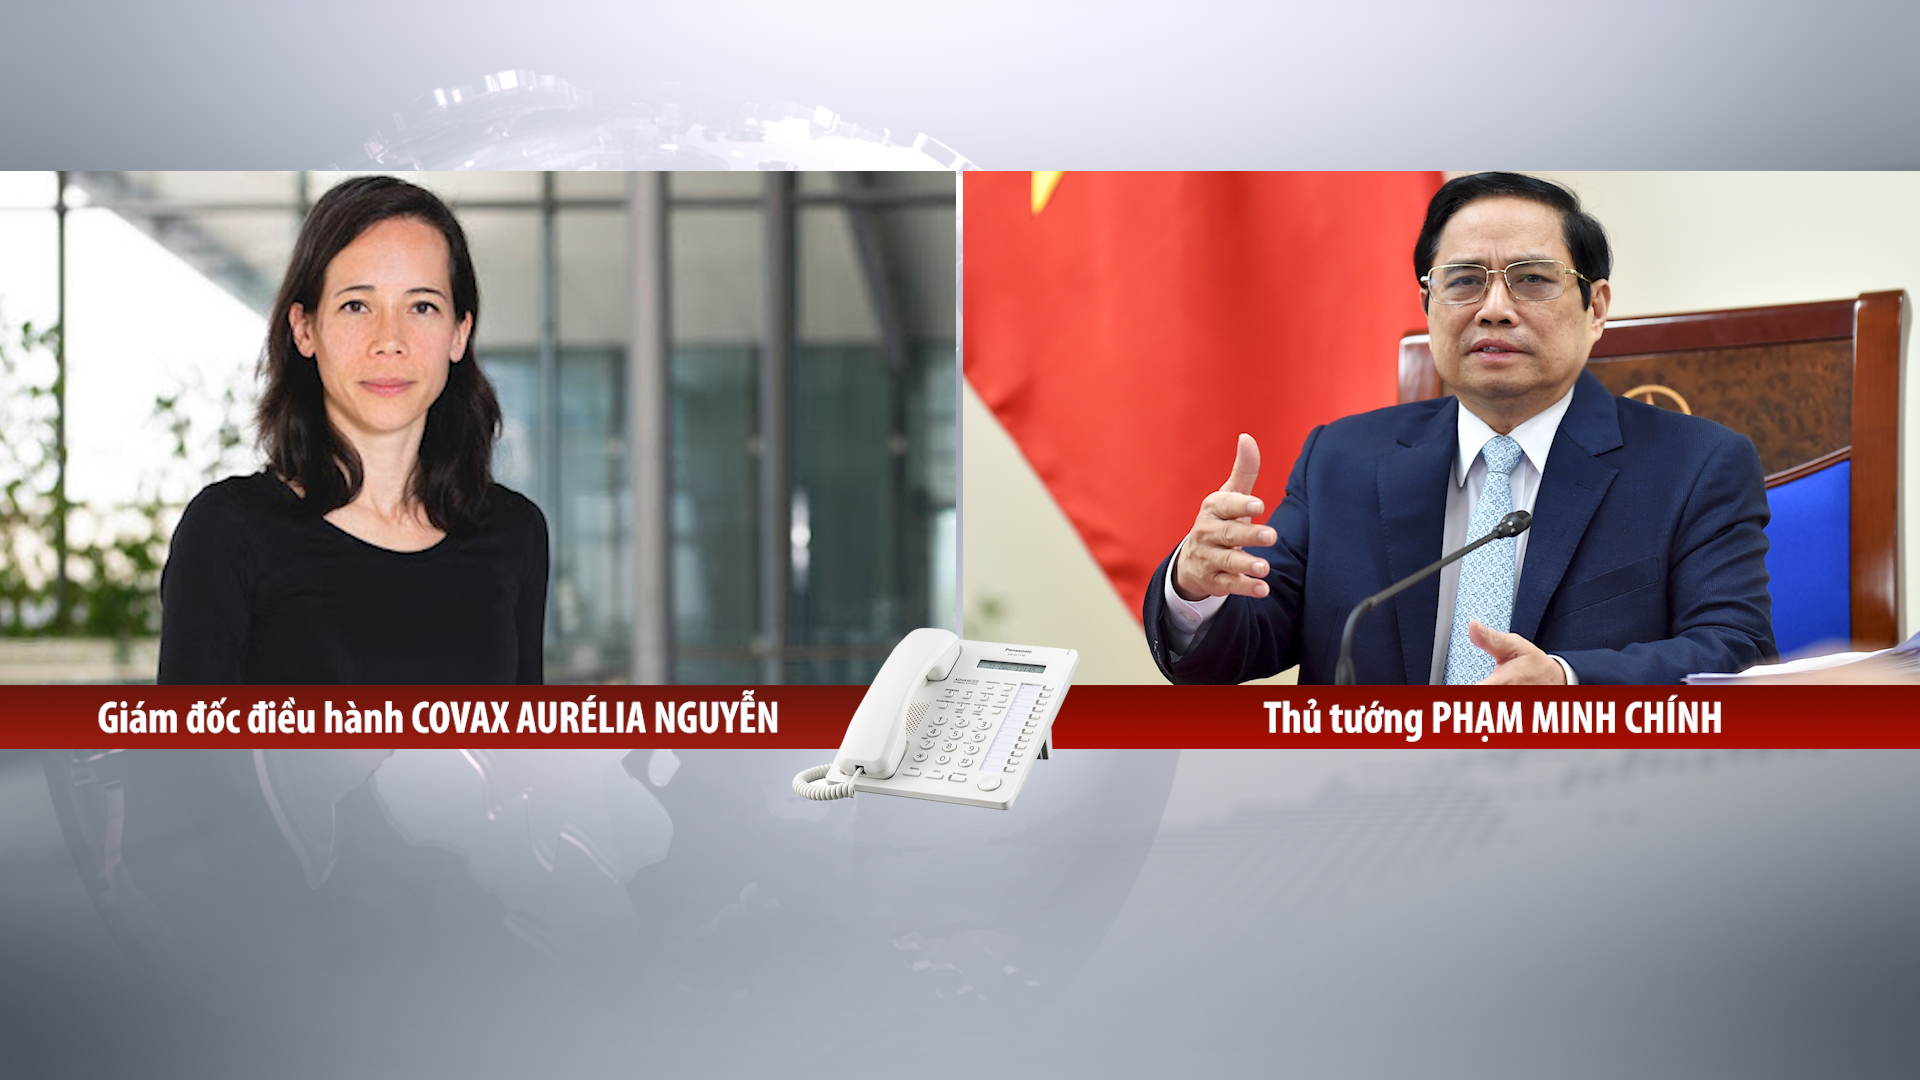 Họp trực tuyến với bà Aurélia Nguyen, Thủ tướng đề nghị COVAX ưu tiên phân bổ vaccine cho Việt Nam càng nhanh, càng nhiều càng tốt- Ảnh: VGP/Nhật Bắc              